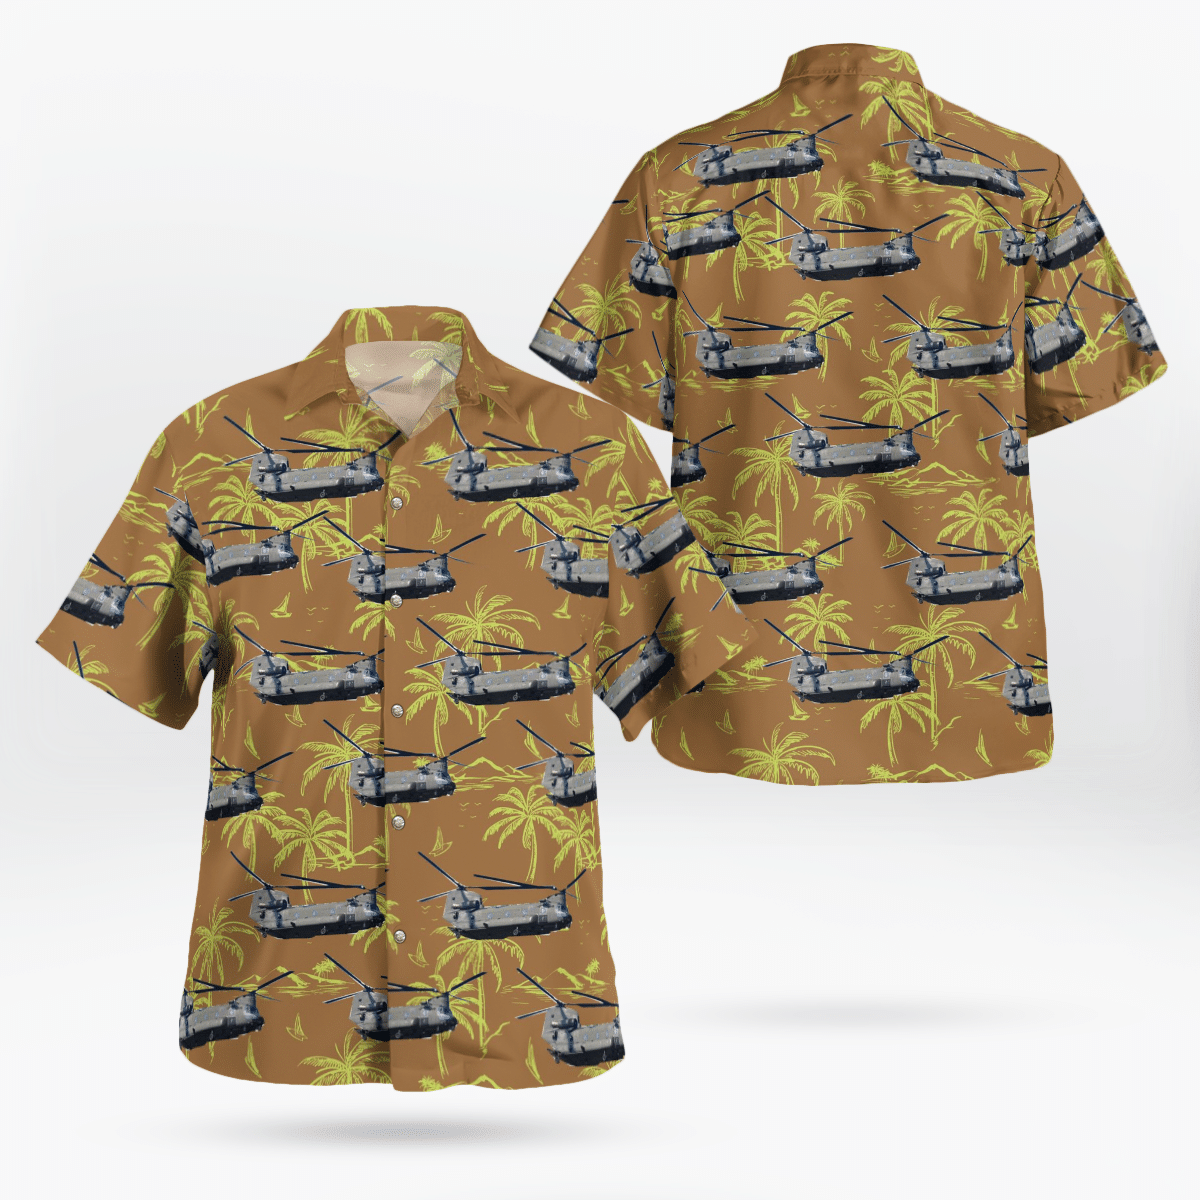 You won't regret buying these Aloha Shirt 37